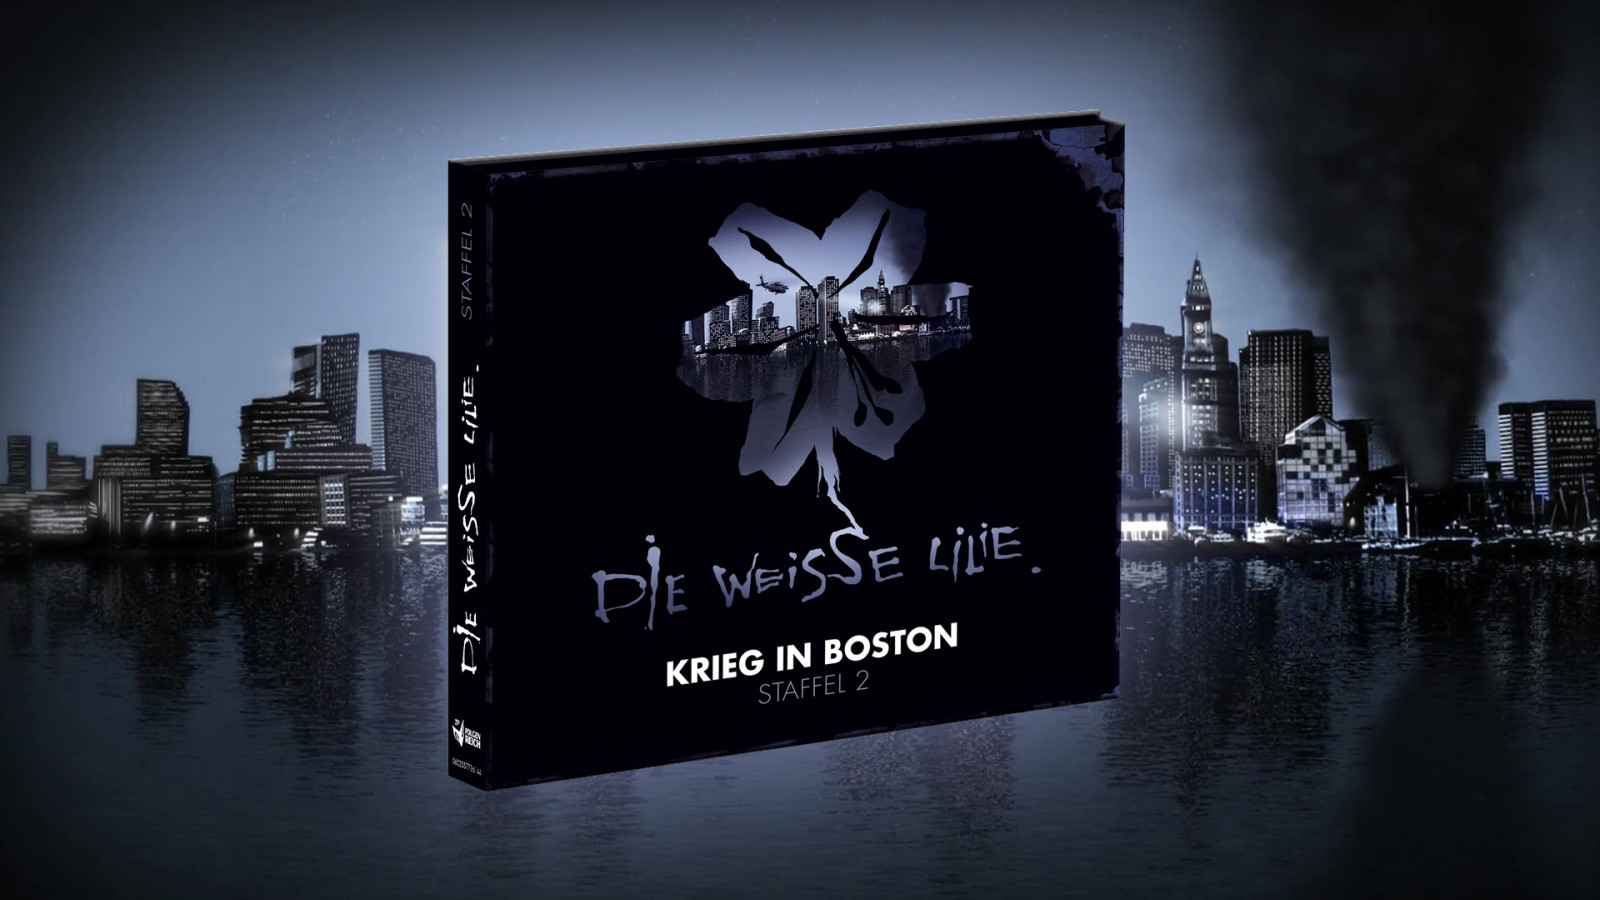 Die Weisse Lilie – Staffel 2 "Krieg in Boston" ist komplett